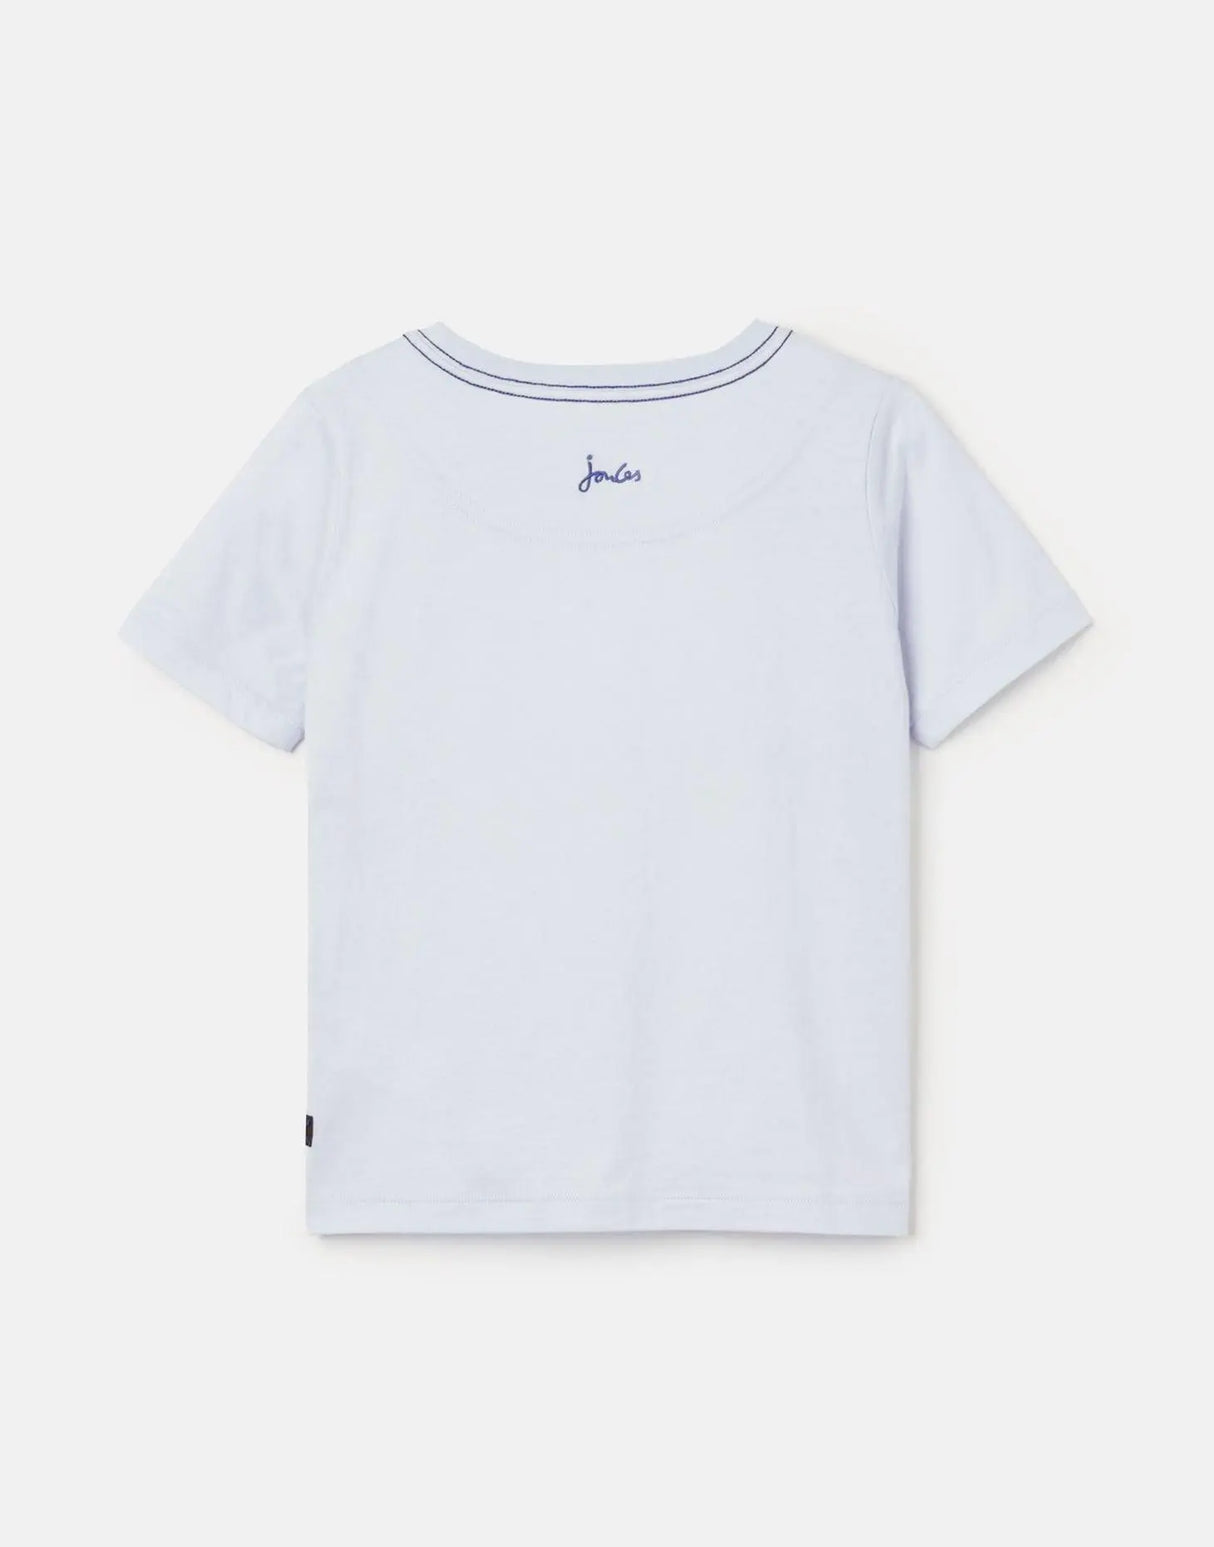 Boy Archie Applique Short Sleeve T-shirt | Joules - Jenni Kidz